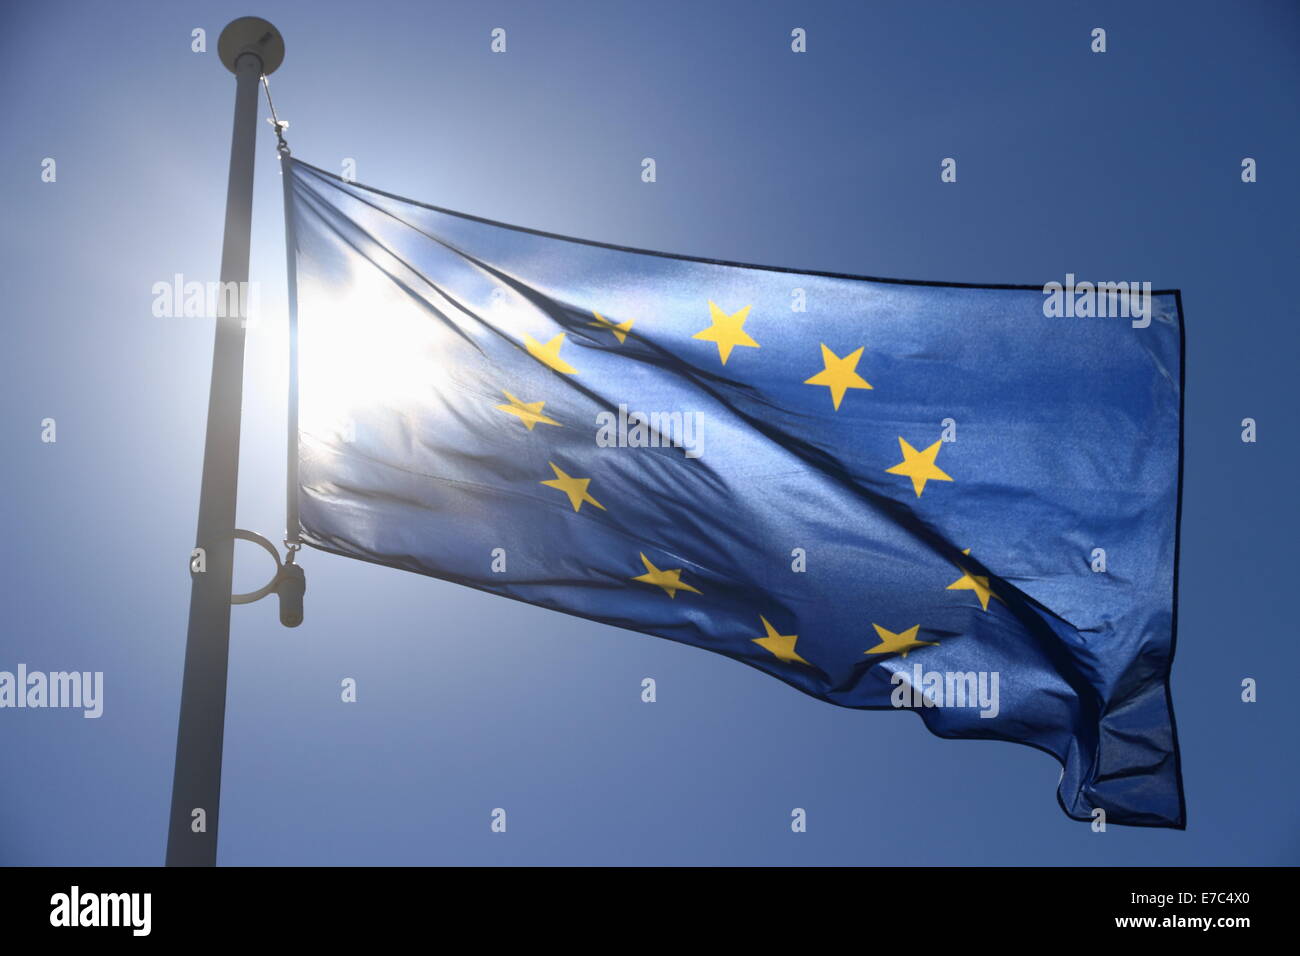 Europäische Flagge mit zwölf gelben Sternen auf blauem Himmel, Contre-Jour Stockfoto